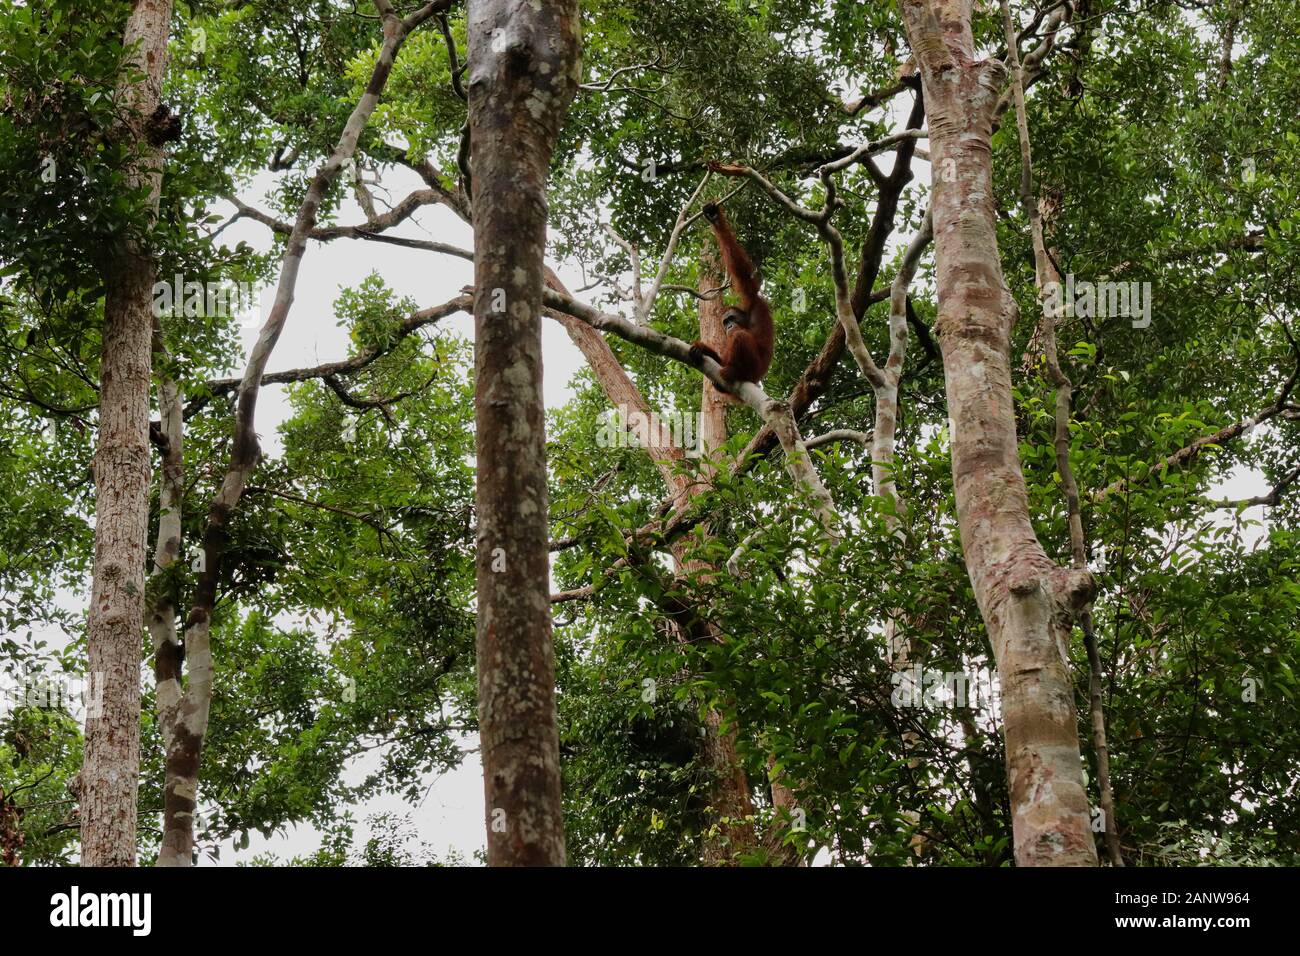 Wild degli Oranghi nella giungla di Bormeo Foto Stock